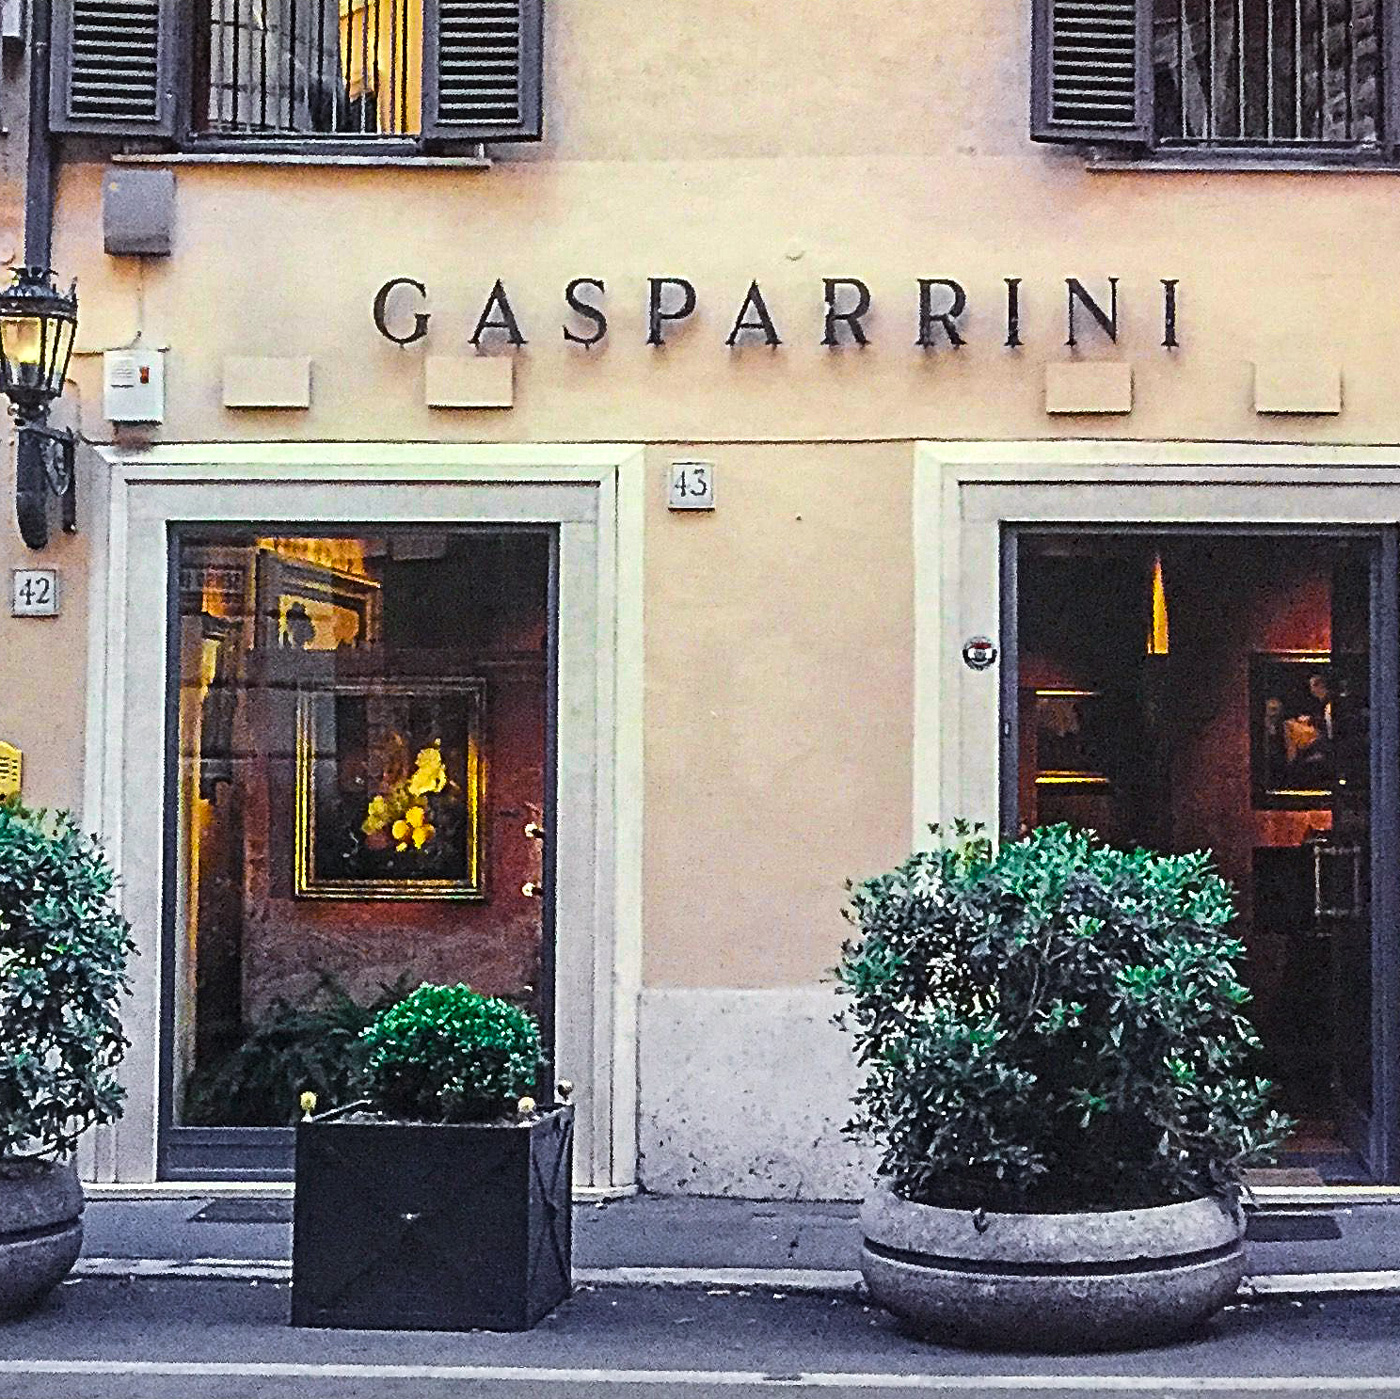 Galleria-Gasparrini